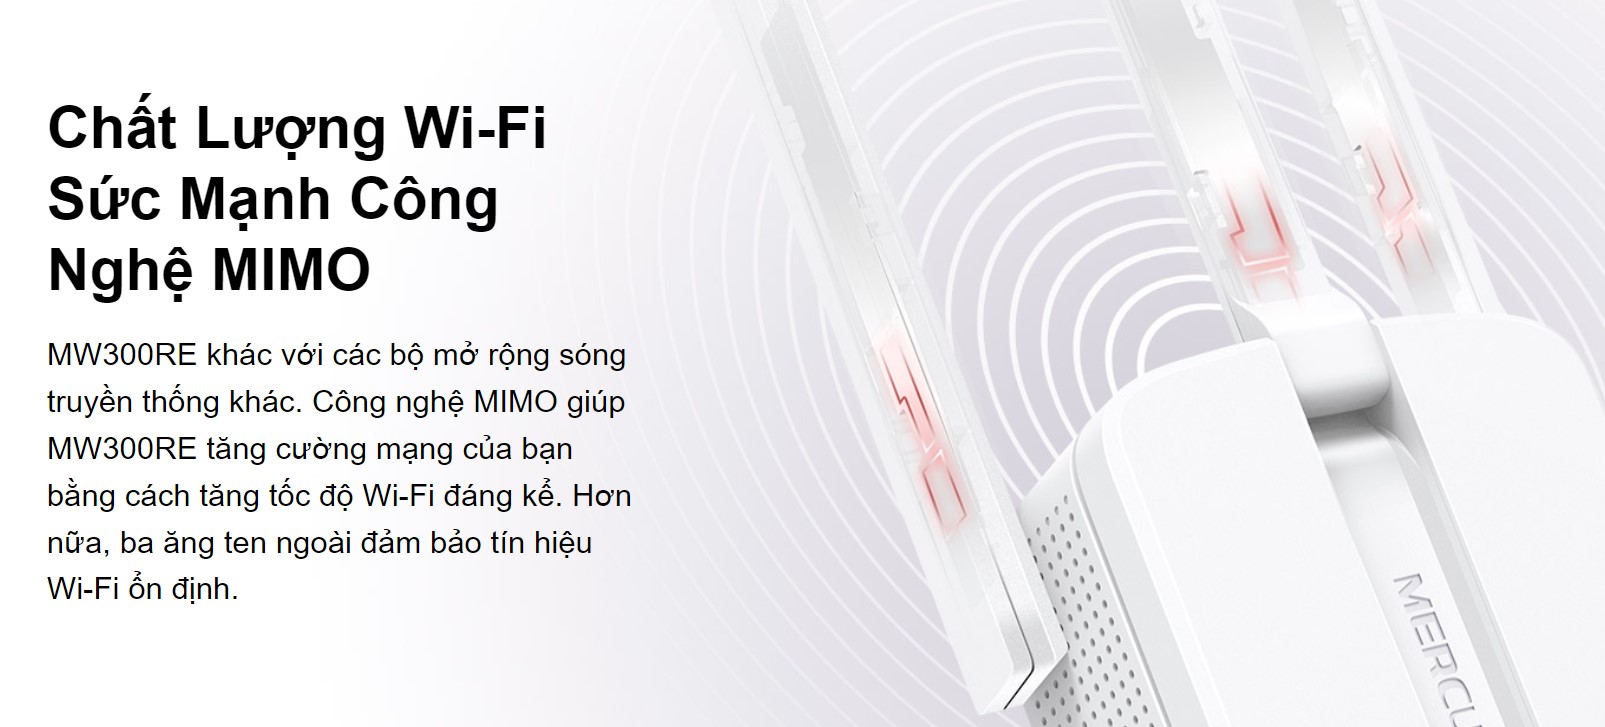 Bộ mở rộng sóng WiFi Mercusys MW300RE Tốc độ 300Mbps